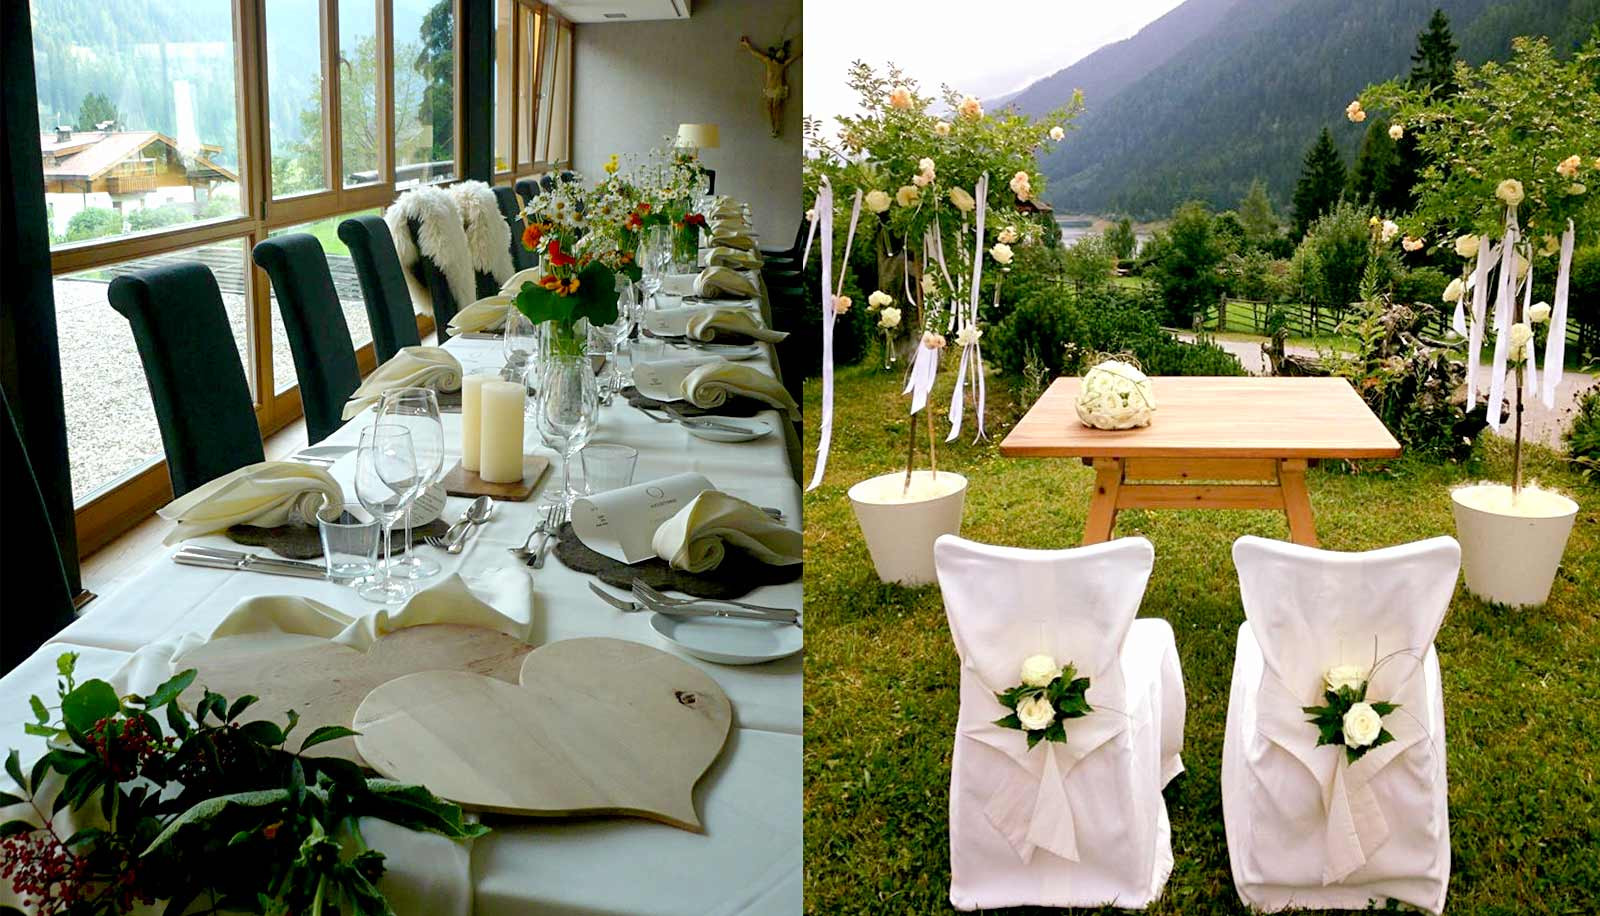 Location Hochzeit
 Arosea ideale Location für eine Hochzeit in Südtirol